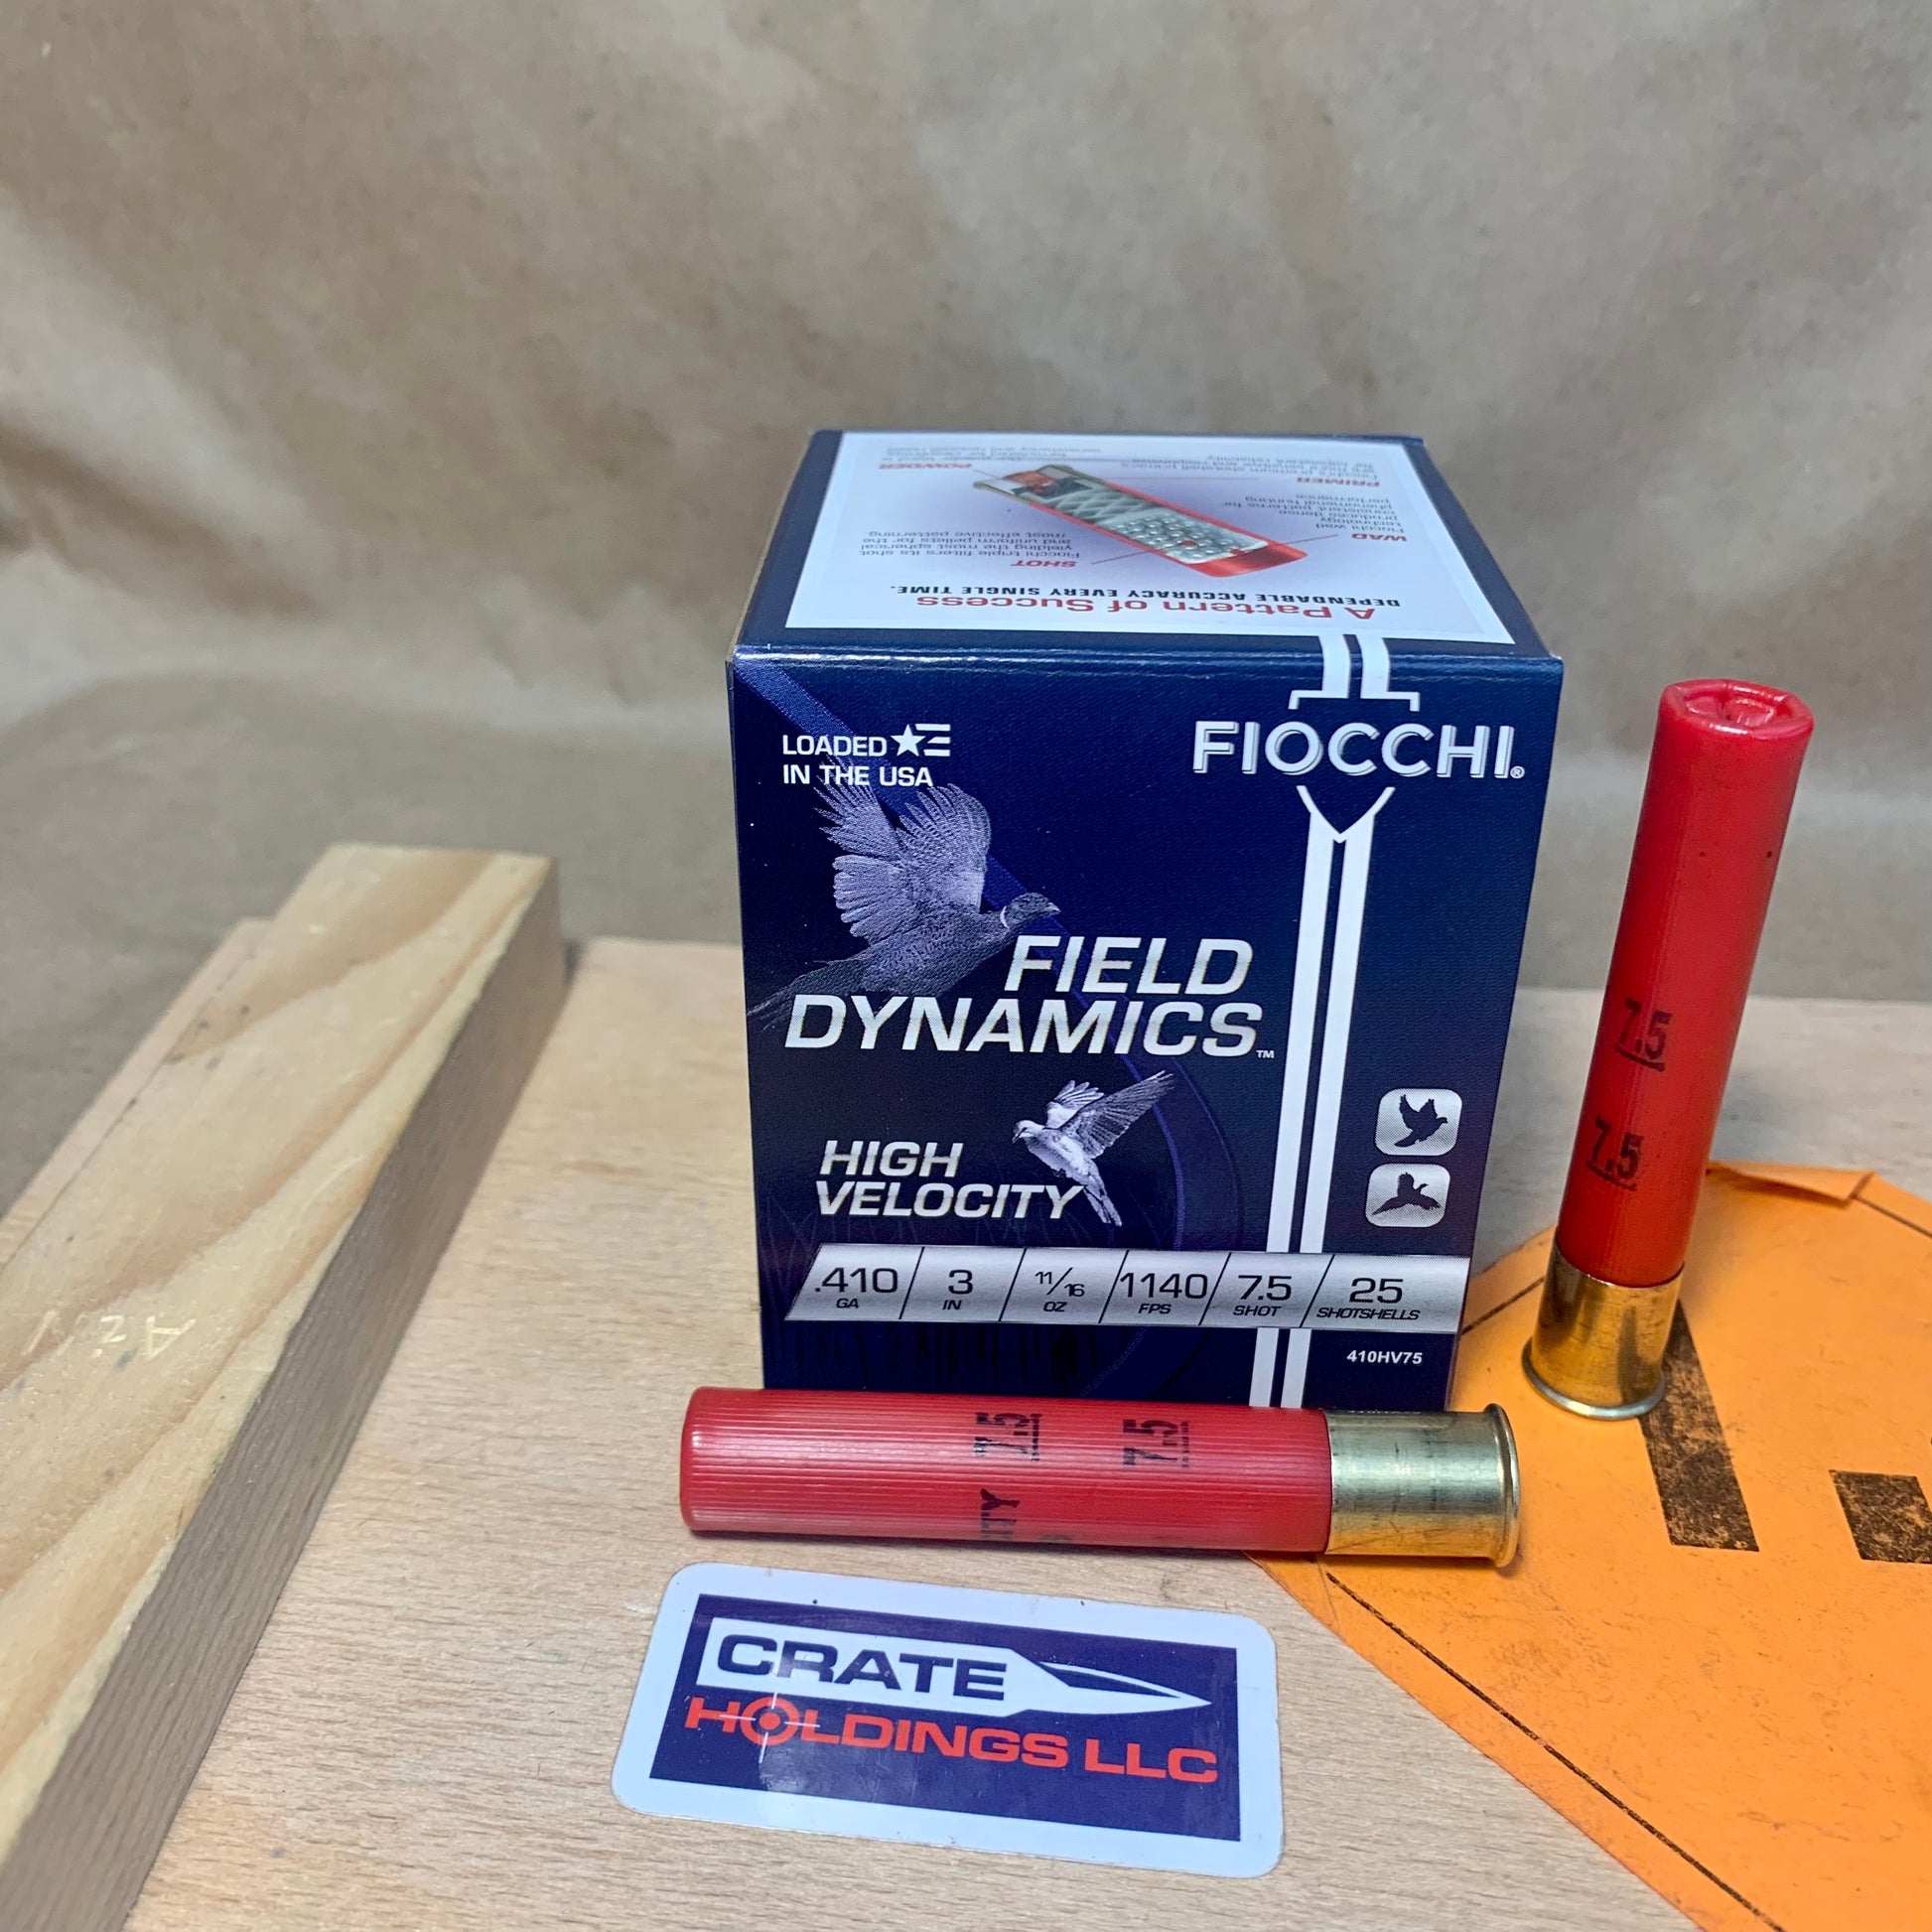 25 Count Box Fiocchi .410 Bore Ammo 3” #7.5 - 410HV75